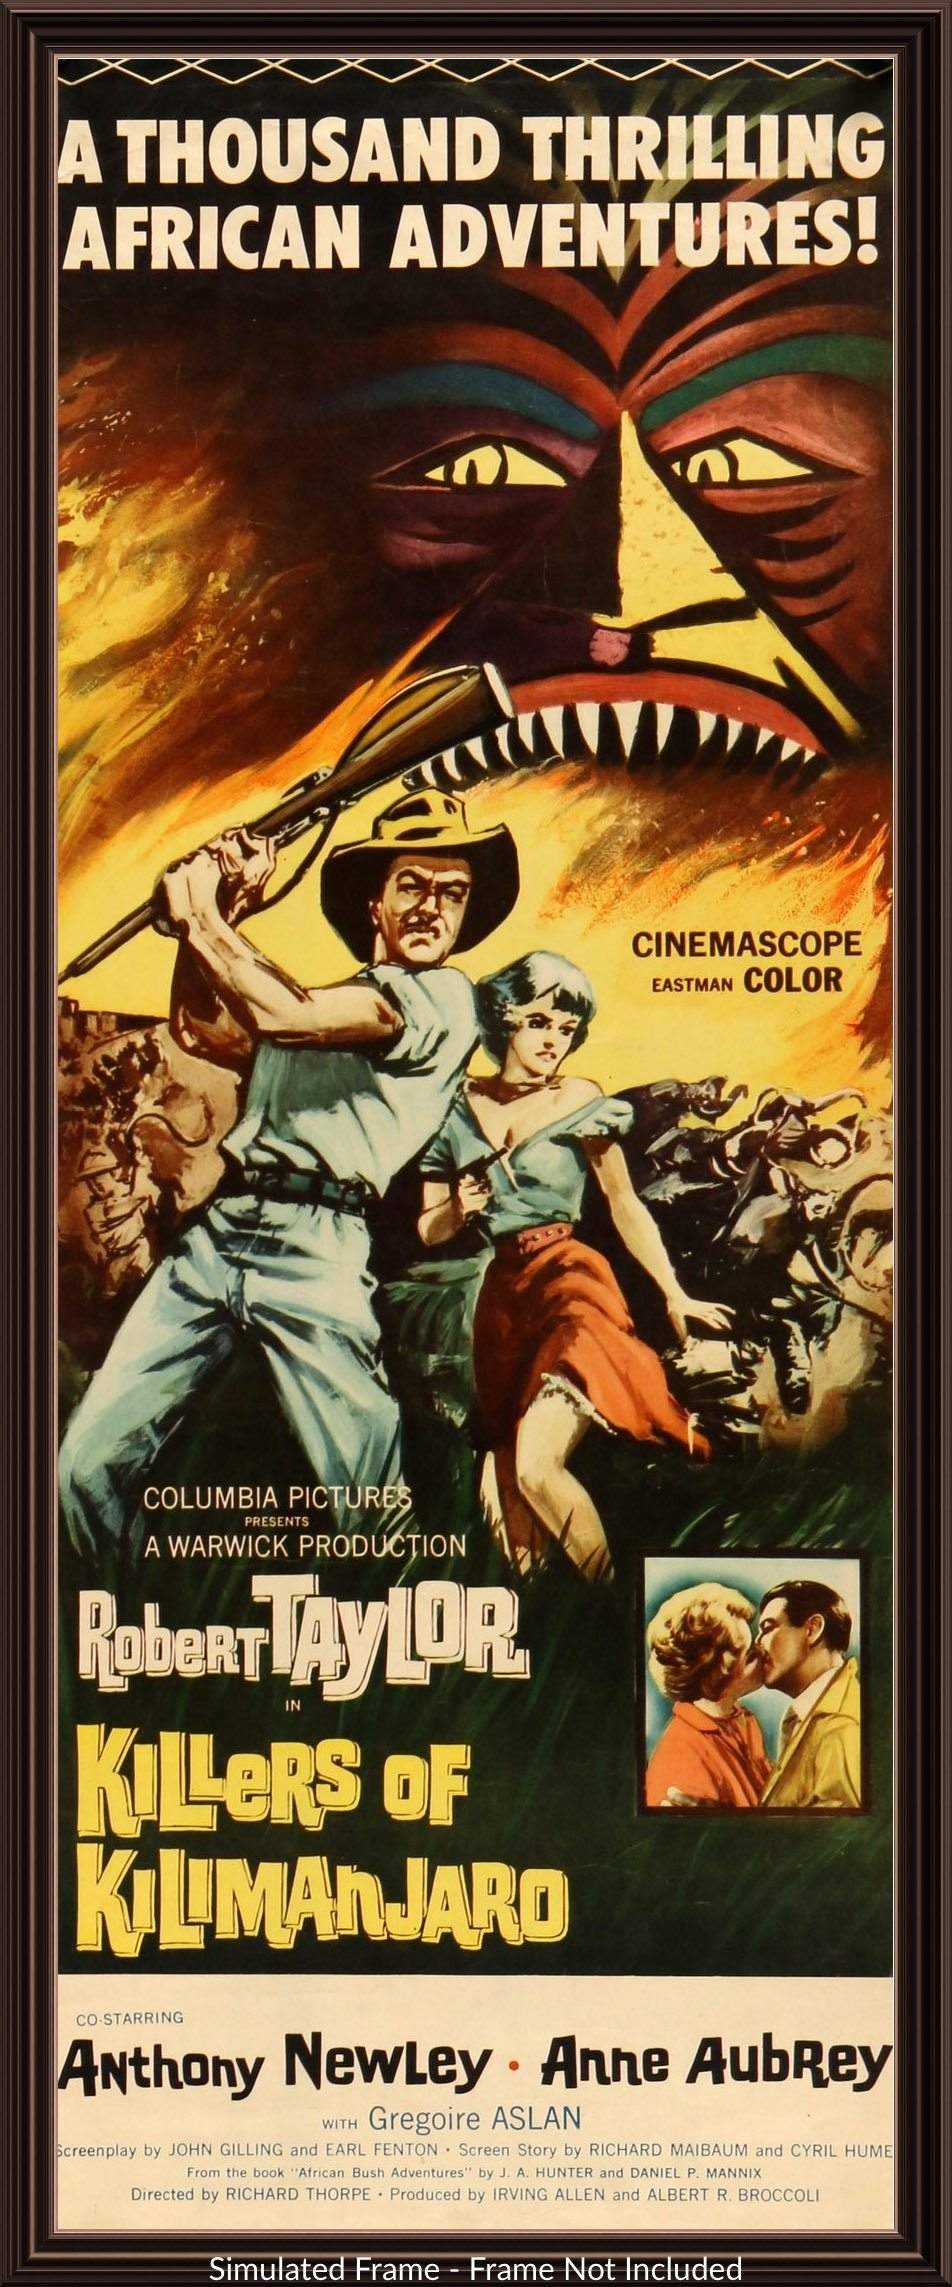 Killers of Kilimanjaro (1959) original movie poster for sale at Original Film Art